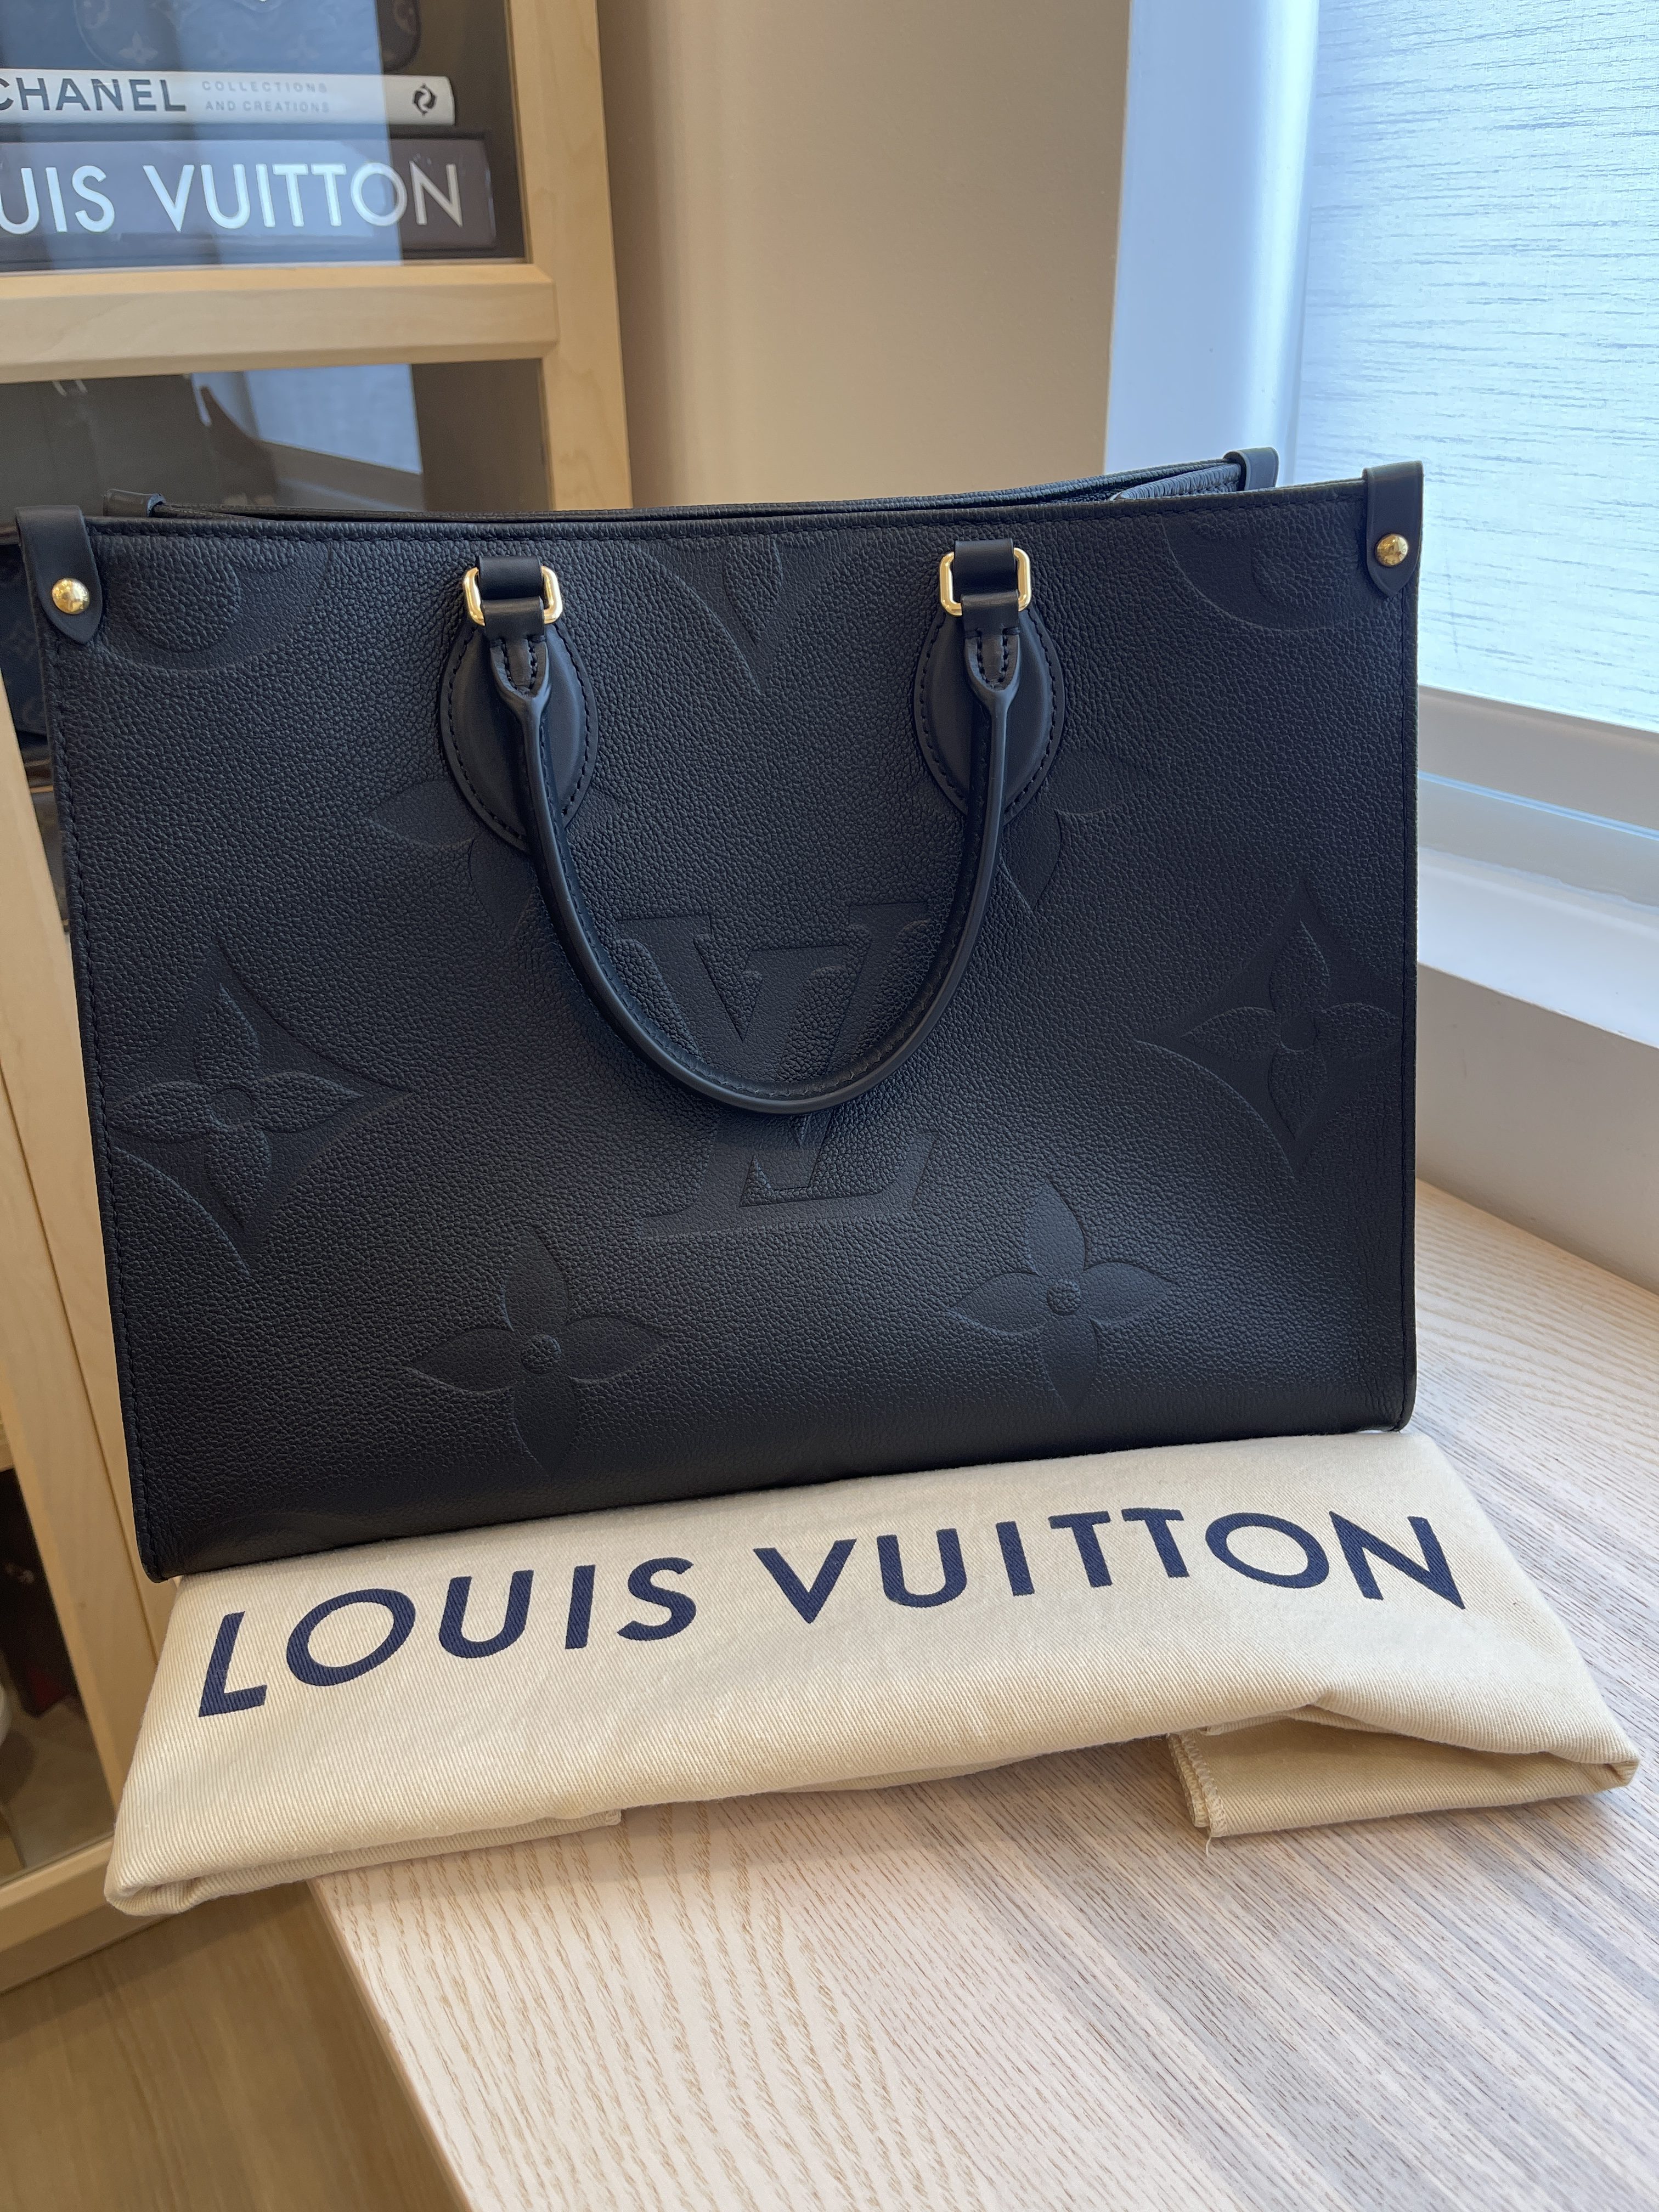 Louis Vuitton Empreinte Monogram Giant Onthego